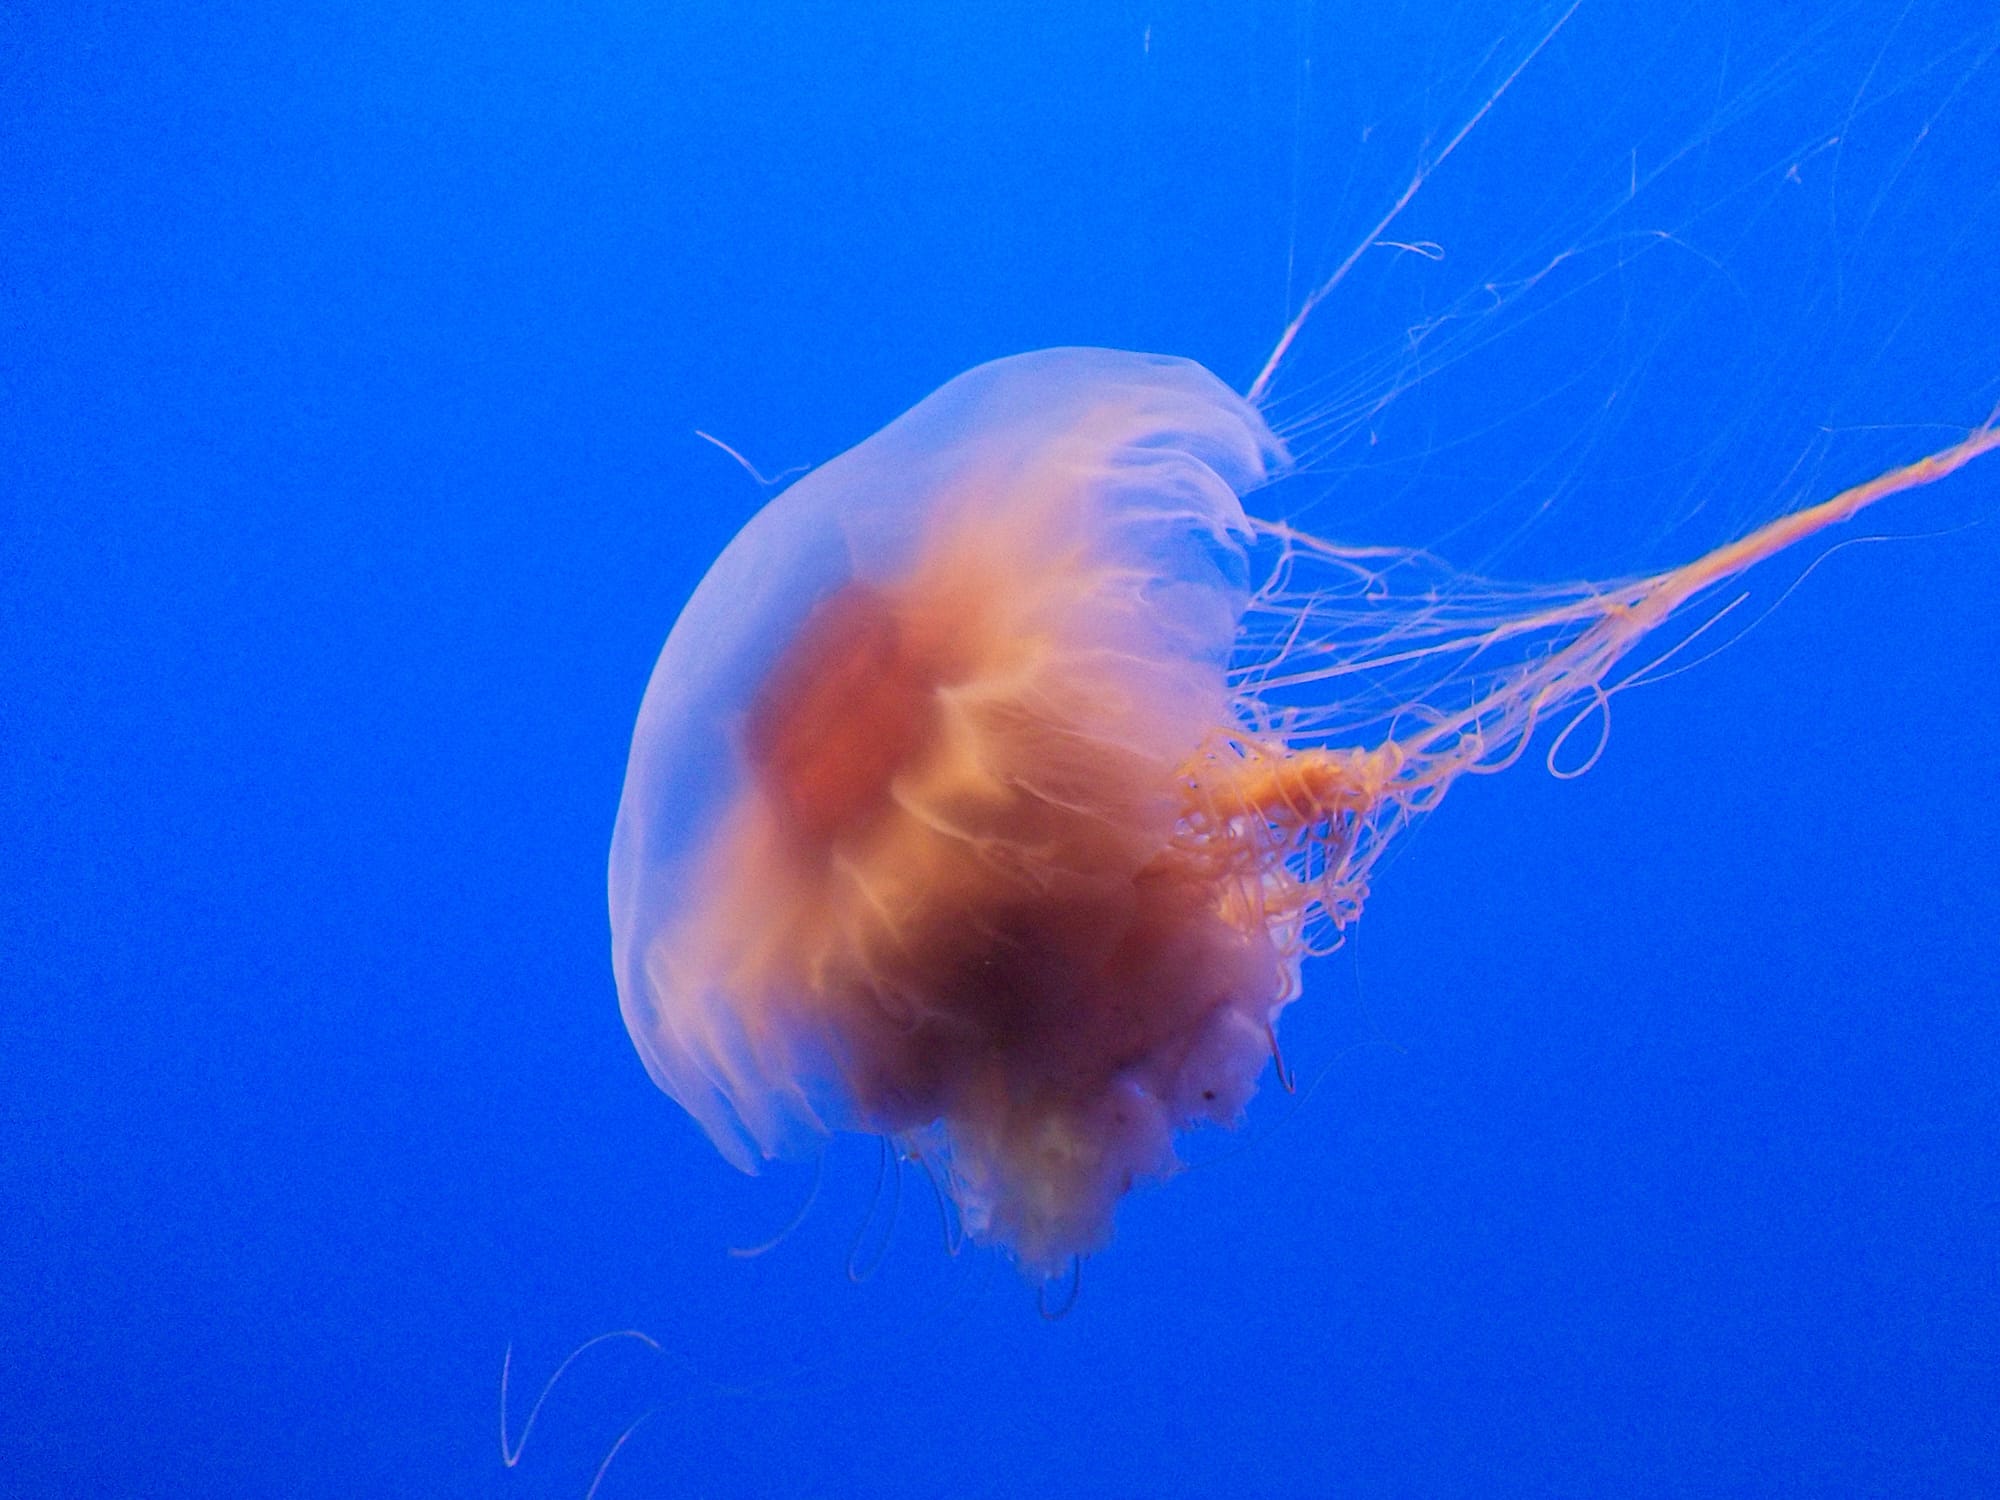 Jellyfish. Photo by Melanie E Magdalena.